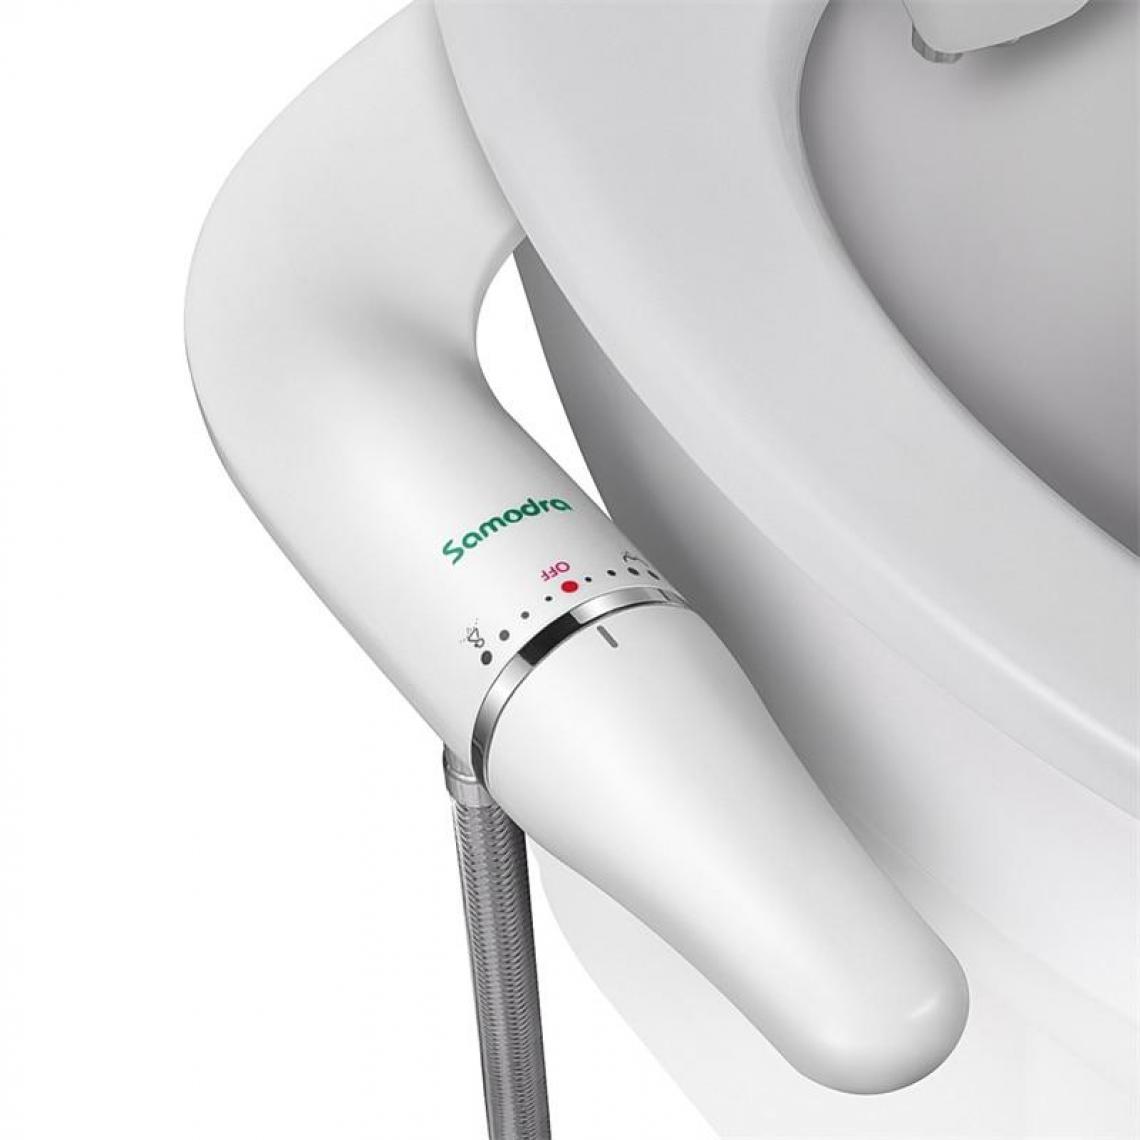 Justgreenbox - Fixation de siège de toilette ultra-mince avec entrée en laiton à pression d'eau réglable, EU la norme 3/8 - Abattant WC